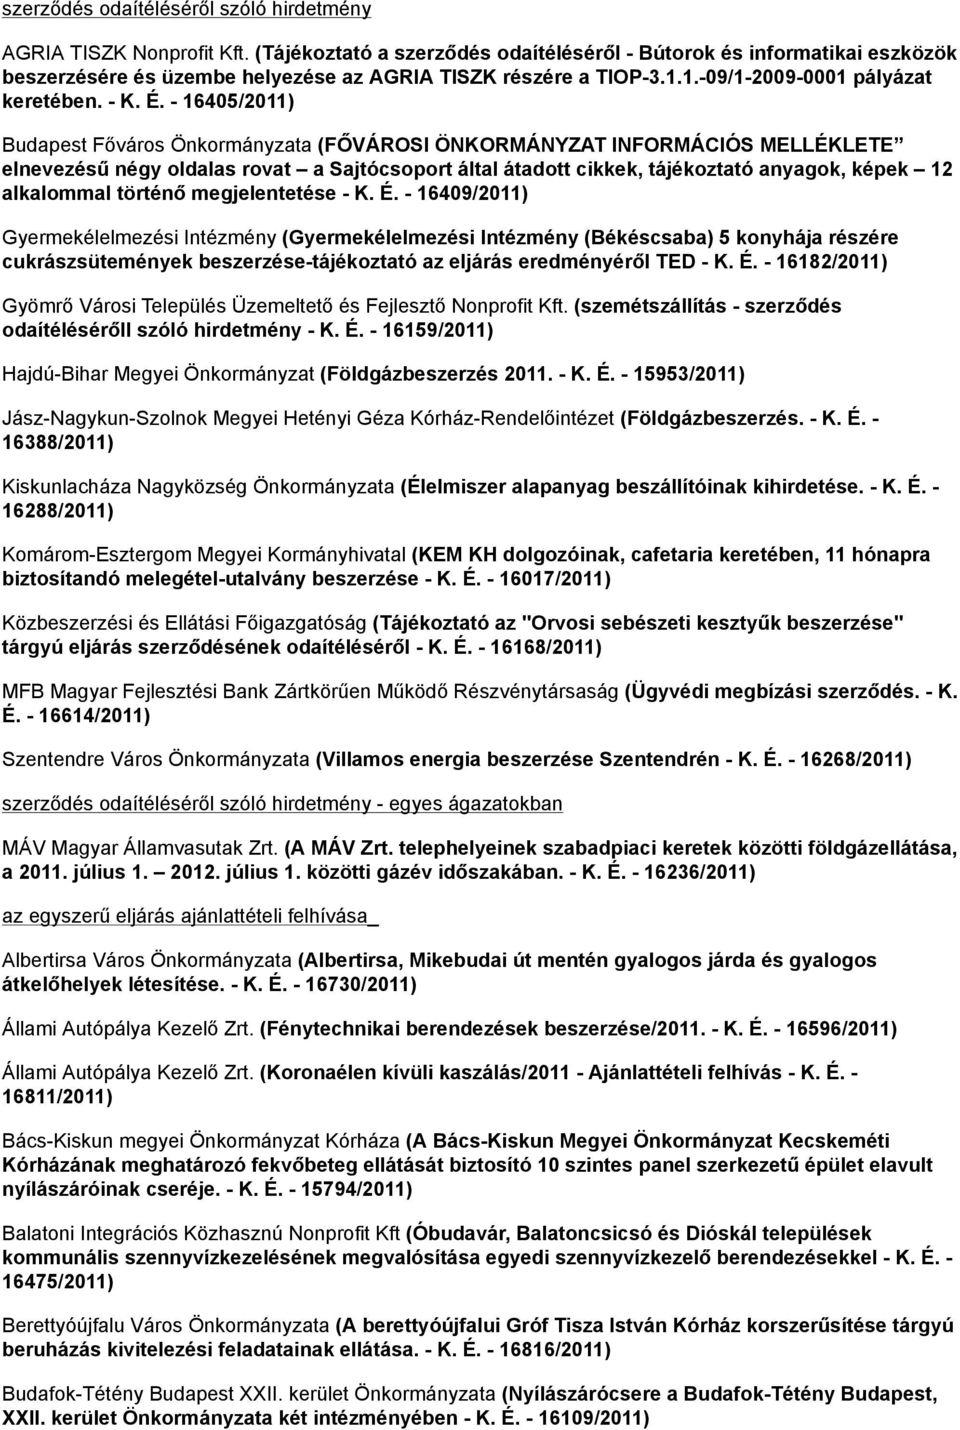 - 16405/2011) Budapest Főváros Önkormányzata (FŐVÁROSI ÖNKORMÁNYZAT INFORMÁCIÓS MELLÉKLETE elnevezésű négy oldalas rovat a Sajtócsoport által átadott cikkek, tájékoztató anyagok, képek 12 alkalommal